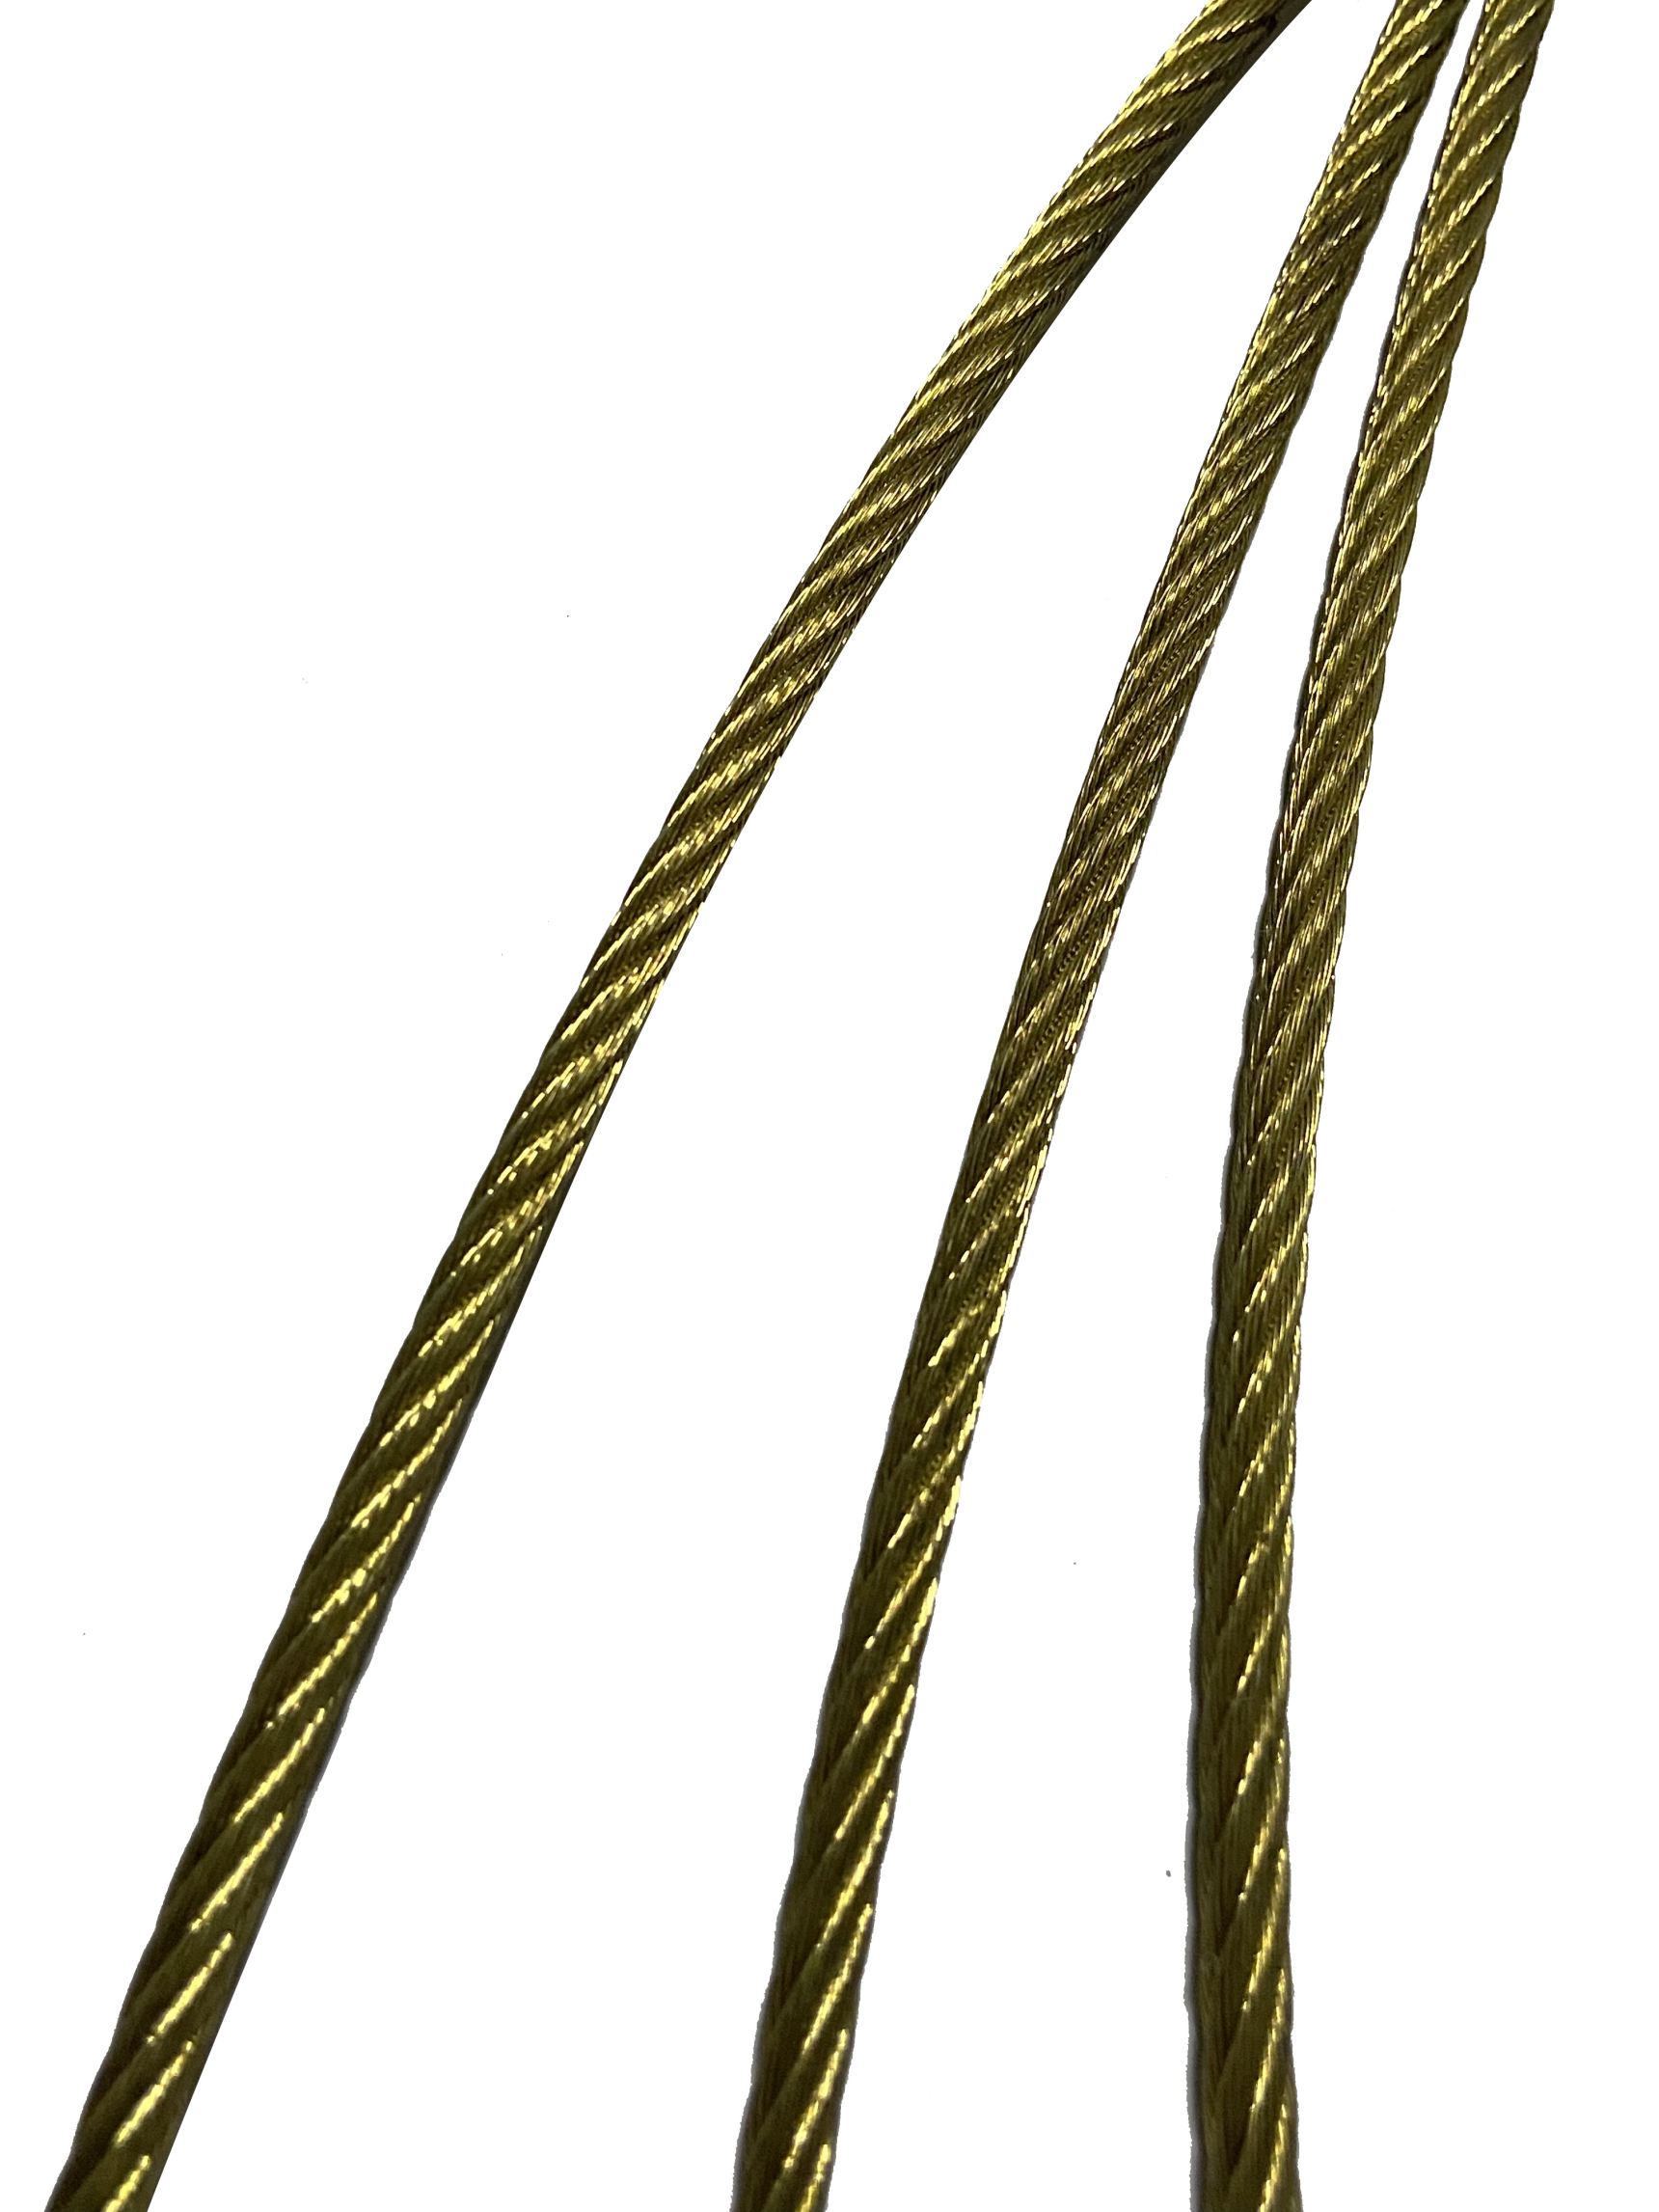 Diamond wire rope